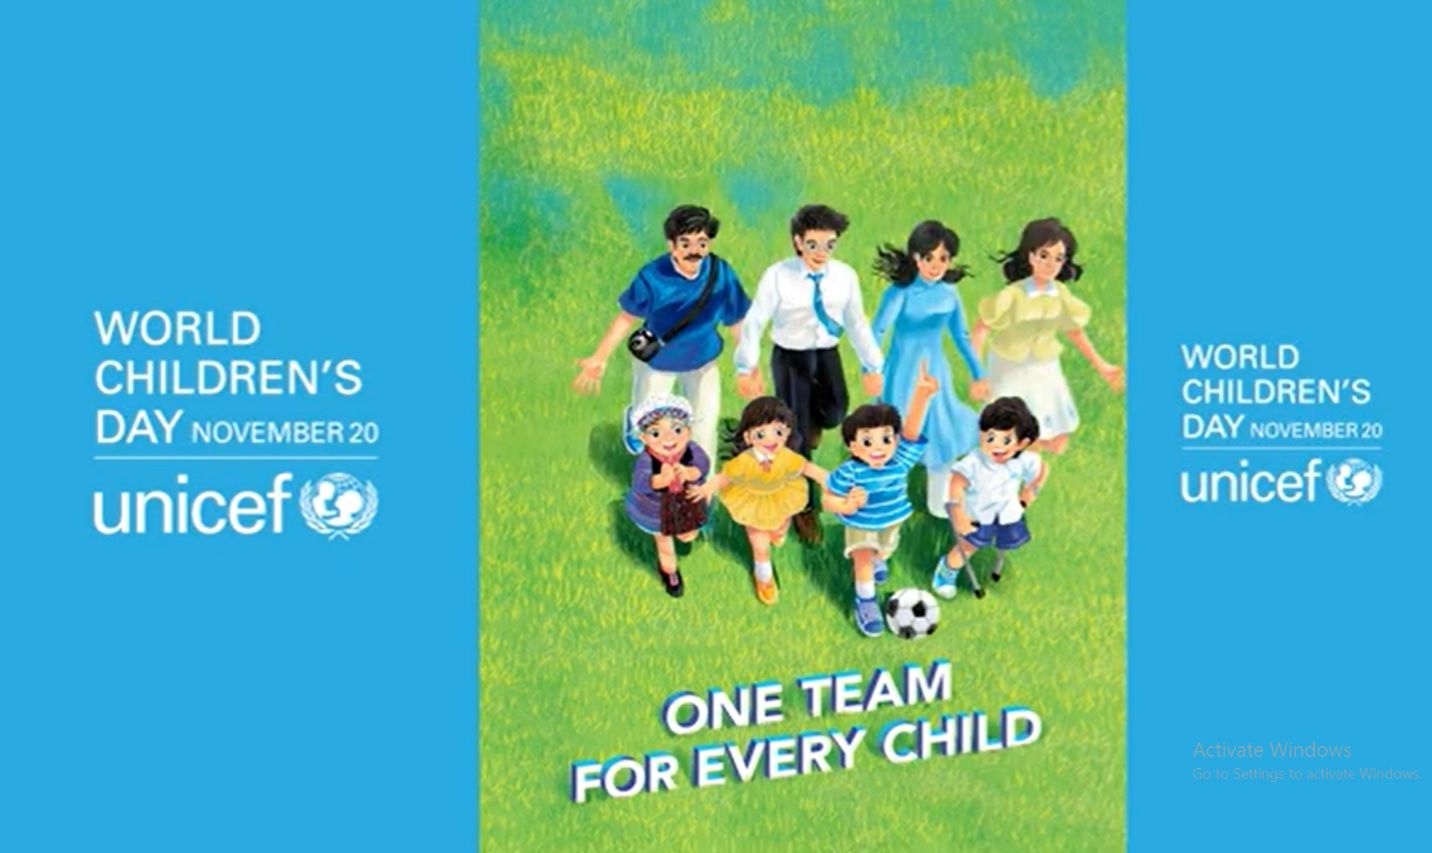 Thắp sáng màu xanh trong Ngày Trẻ em thế giới là một sáng kiến toàn cầu. Thông điệp Ngày Trẻ em thế giới năm nay được UNICEF đưa ra là “One team for every child” 